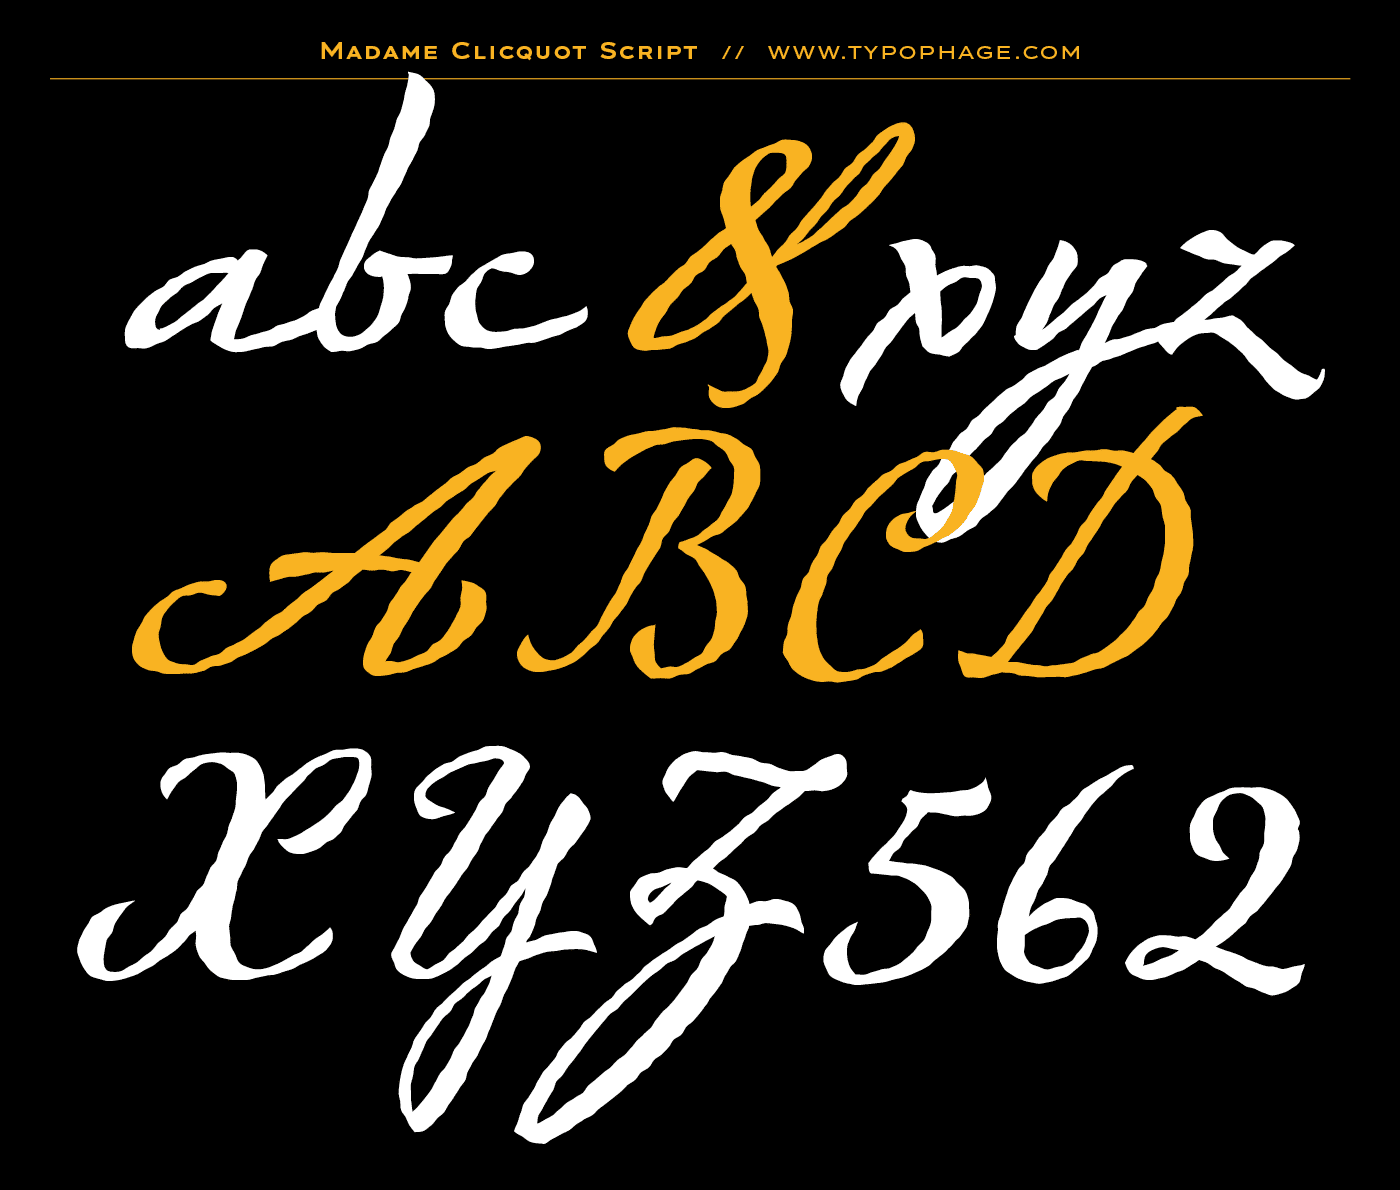 Typographie exclusive Veuve Clicquot Ponsardin. Alphabet sur mesure, typographie d'identité. Specimen de caractères typographiques. Typographie scripte. Ecriture typographiée.